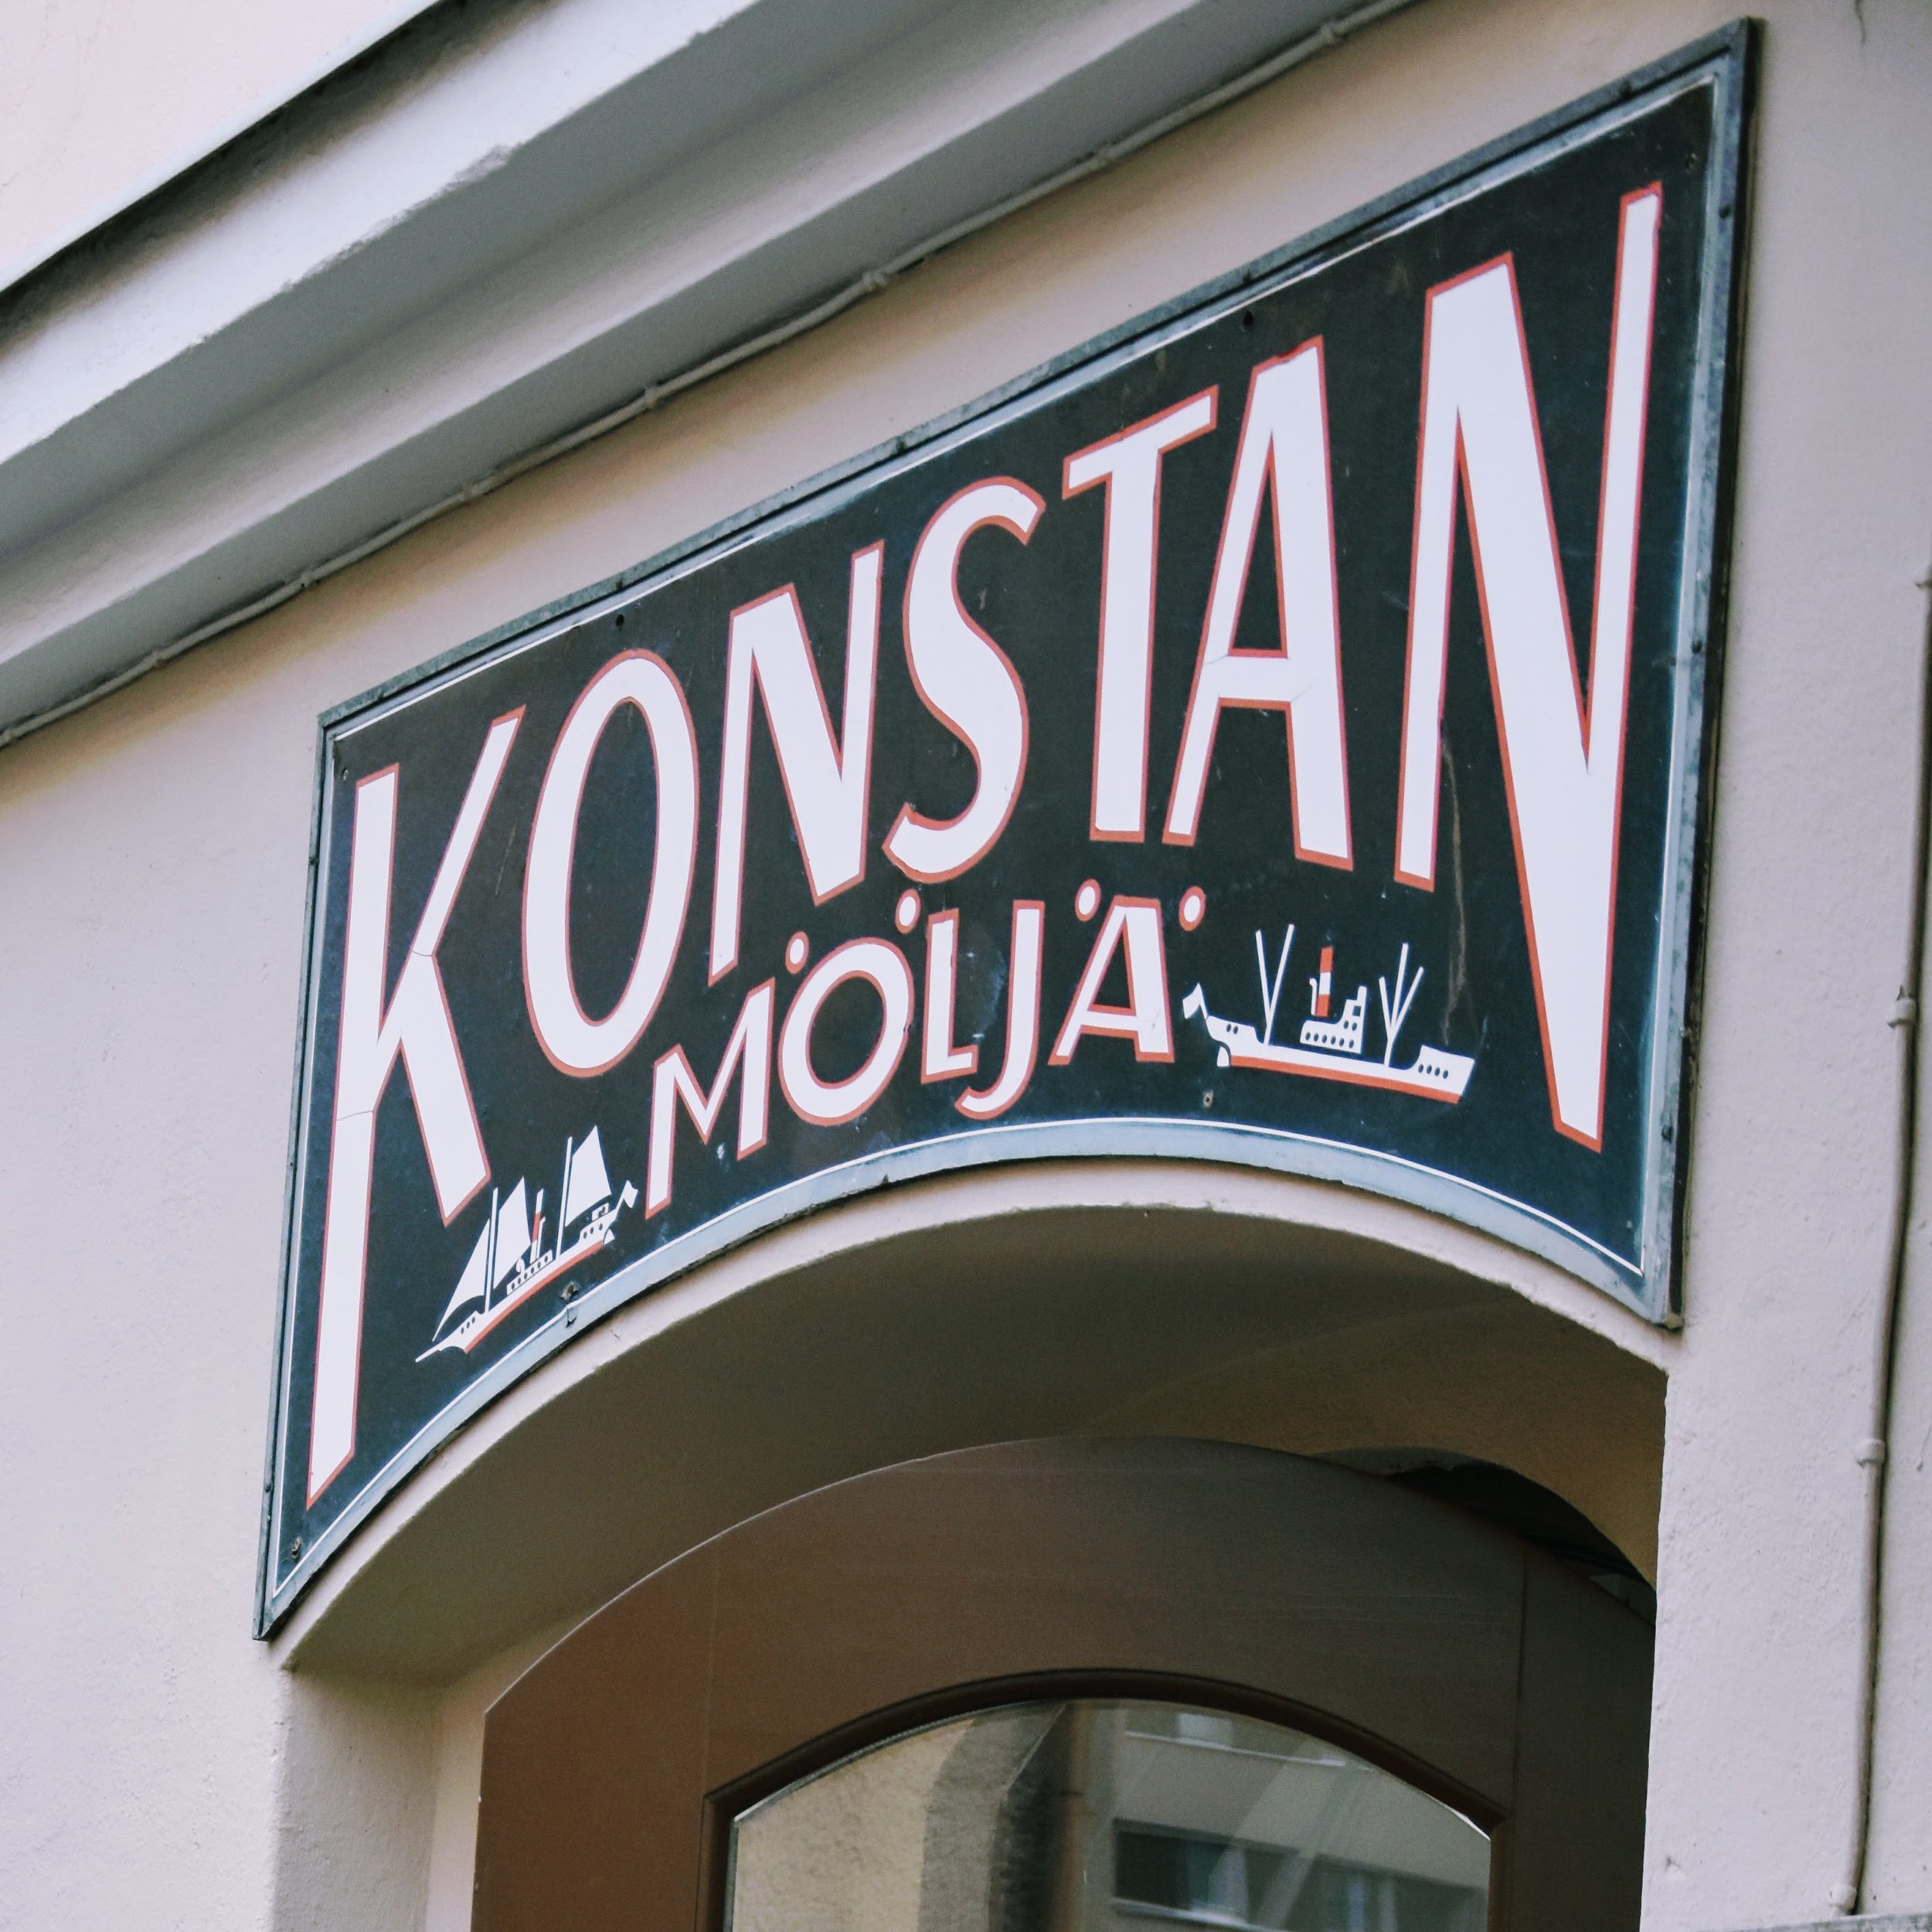 Restaurangen ligger en bit utanför Helsingfors stadskärna.